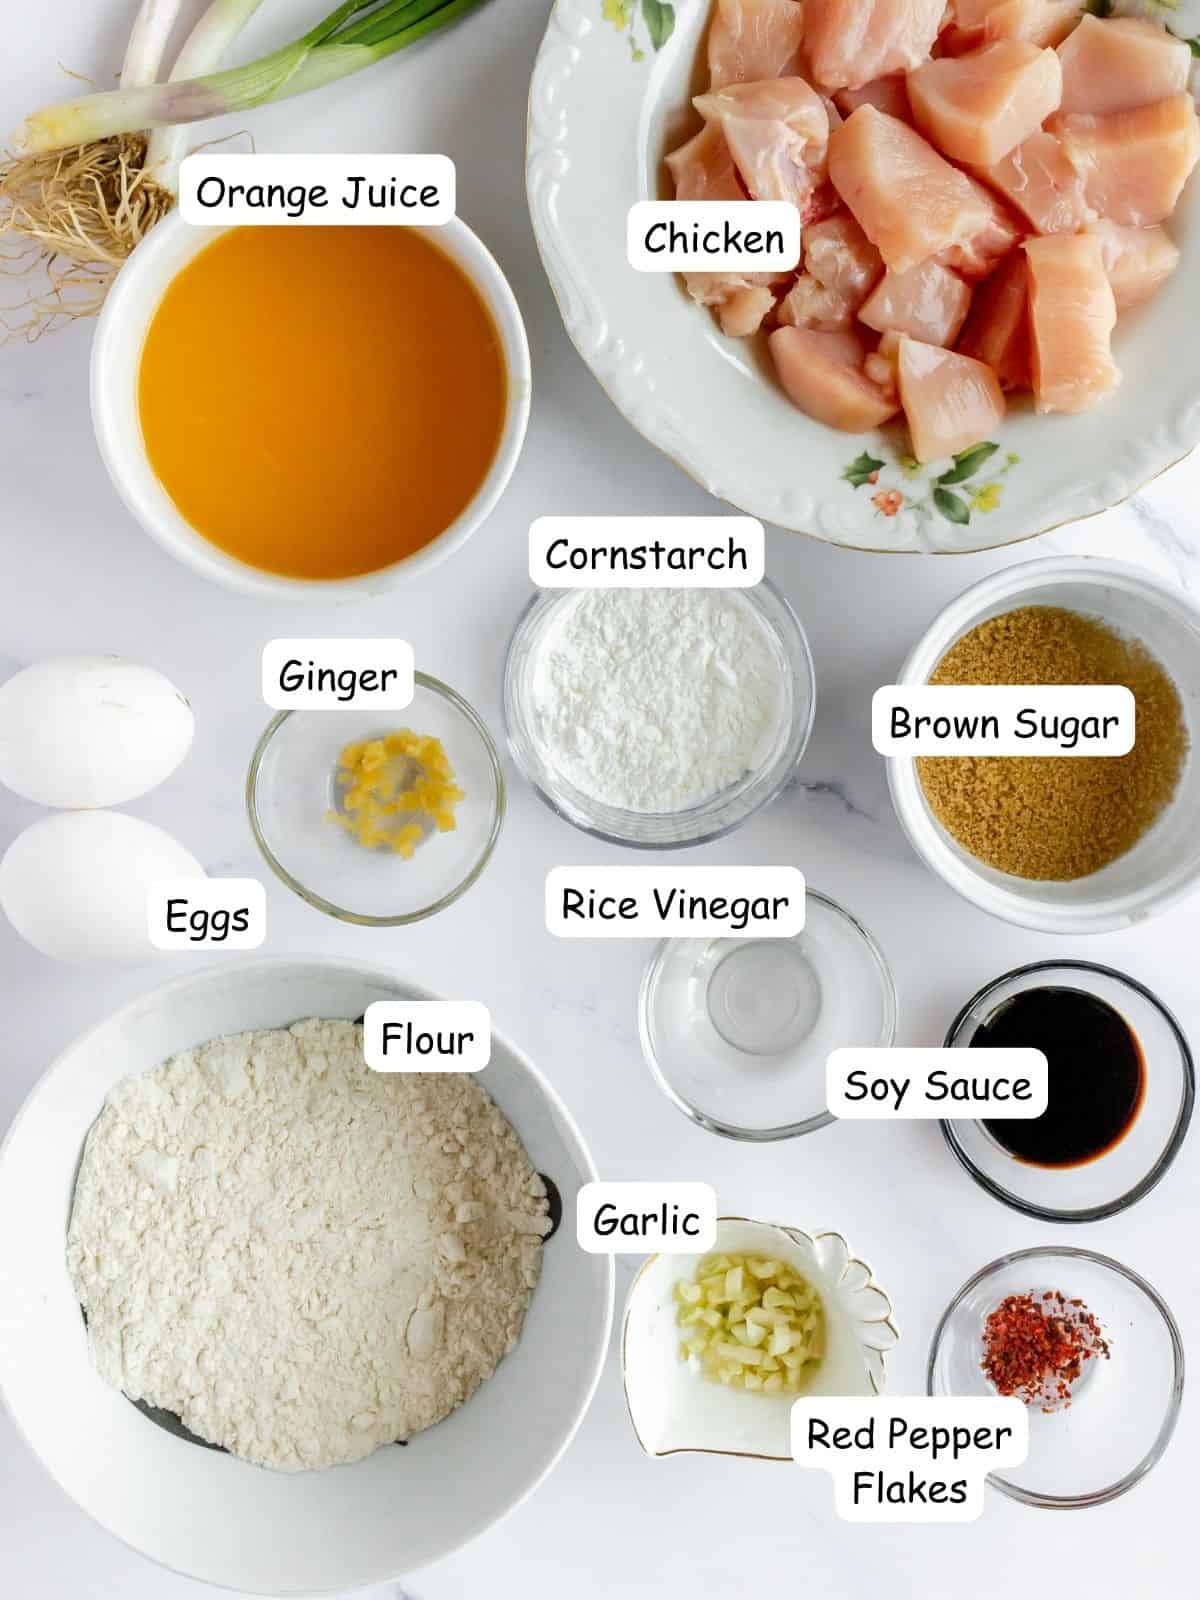 Ingredients in bowls, chicken, flour, garlic, eggs, red pepper flakes, orange juice, brown sugar, ginger, rice vinegar, cornstarch.